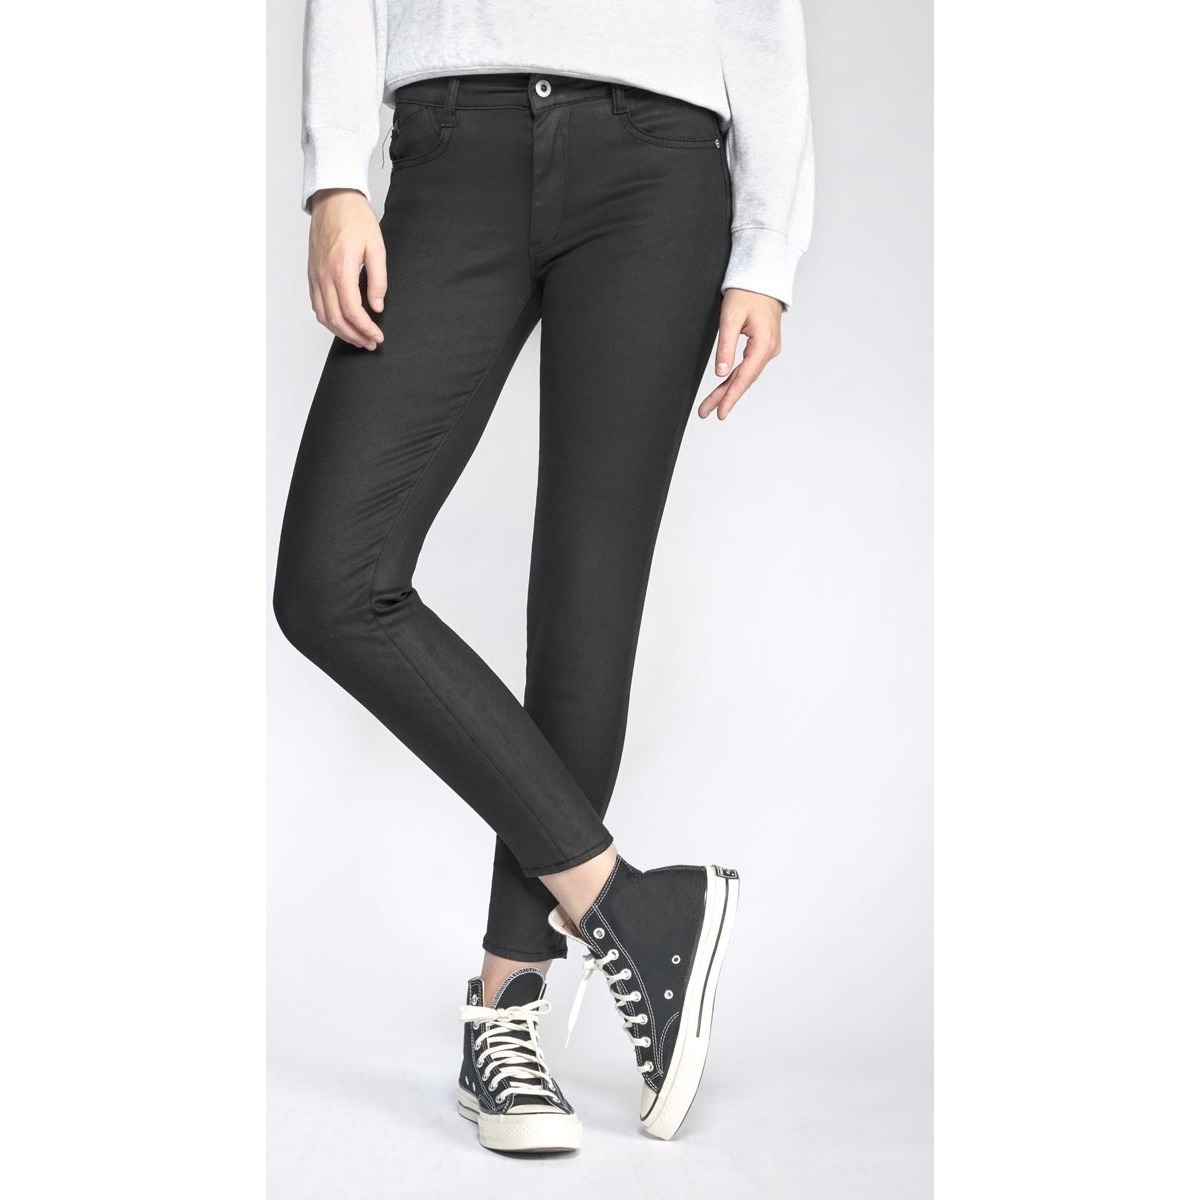 Le Temps des Cerises Noir Pulp slim taille haute 7/8ème jeans enduit noir n°0 VS4DkOOO